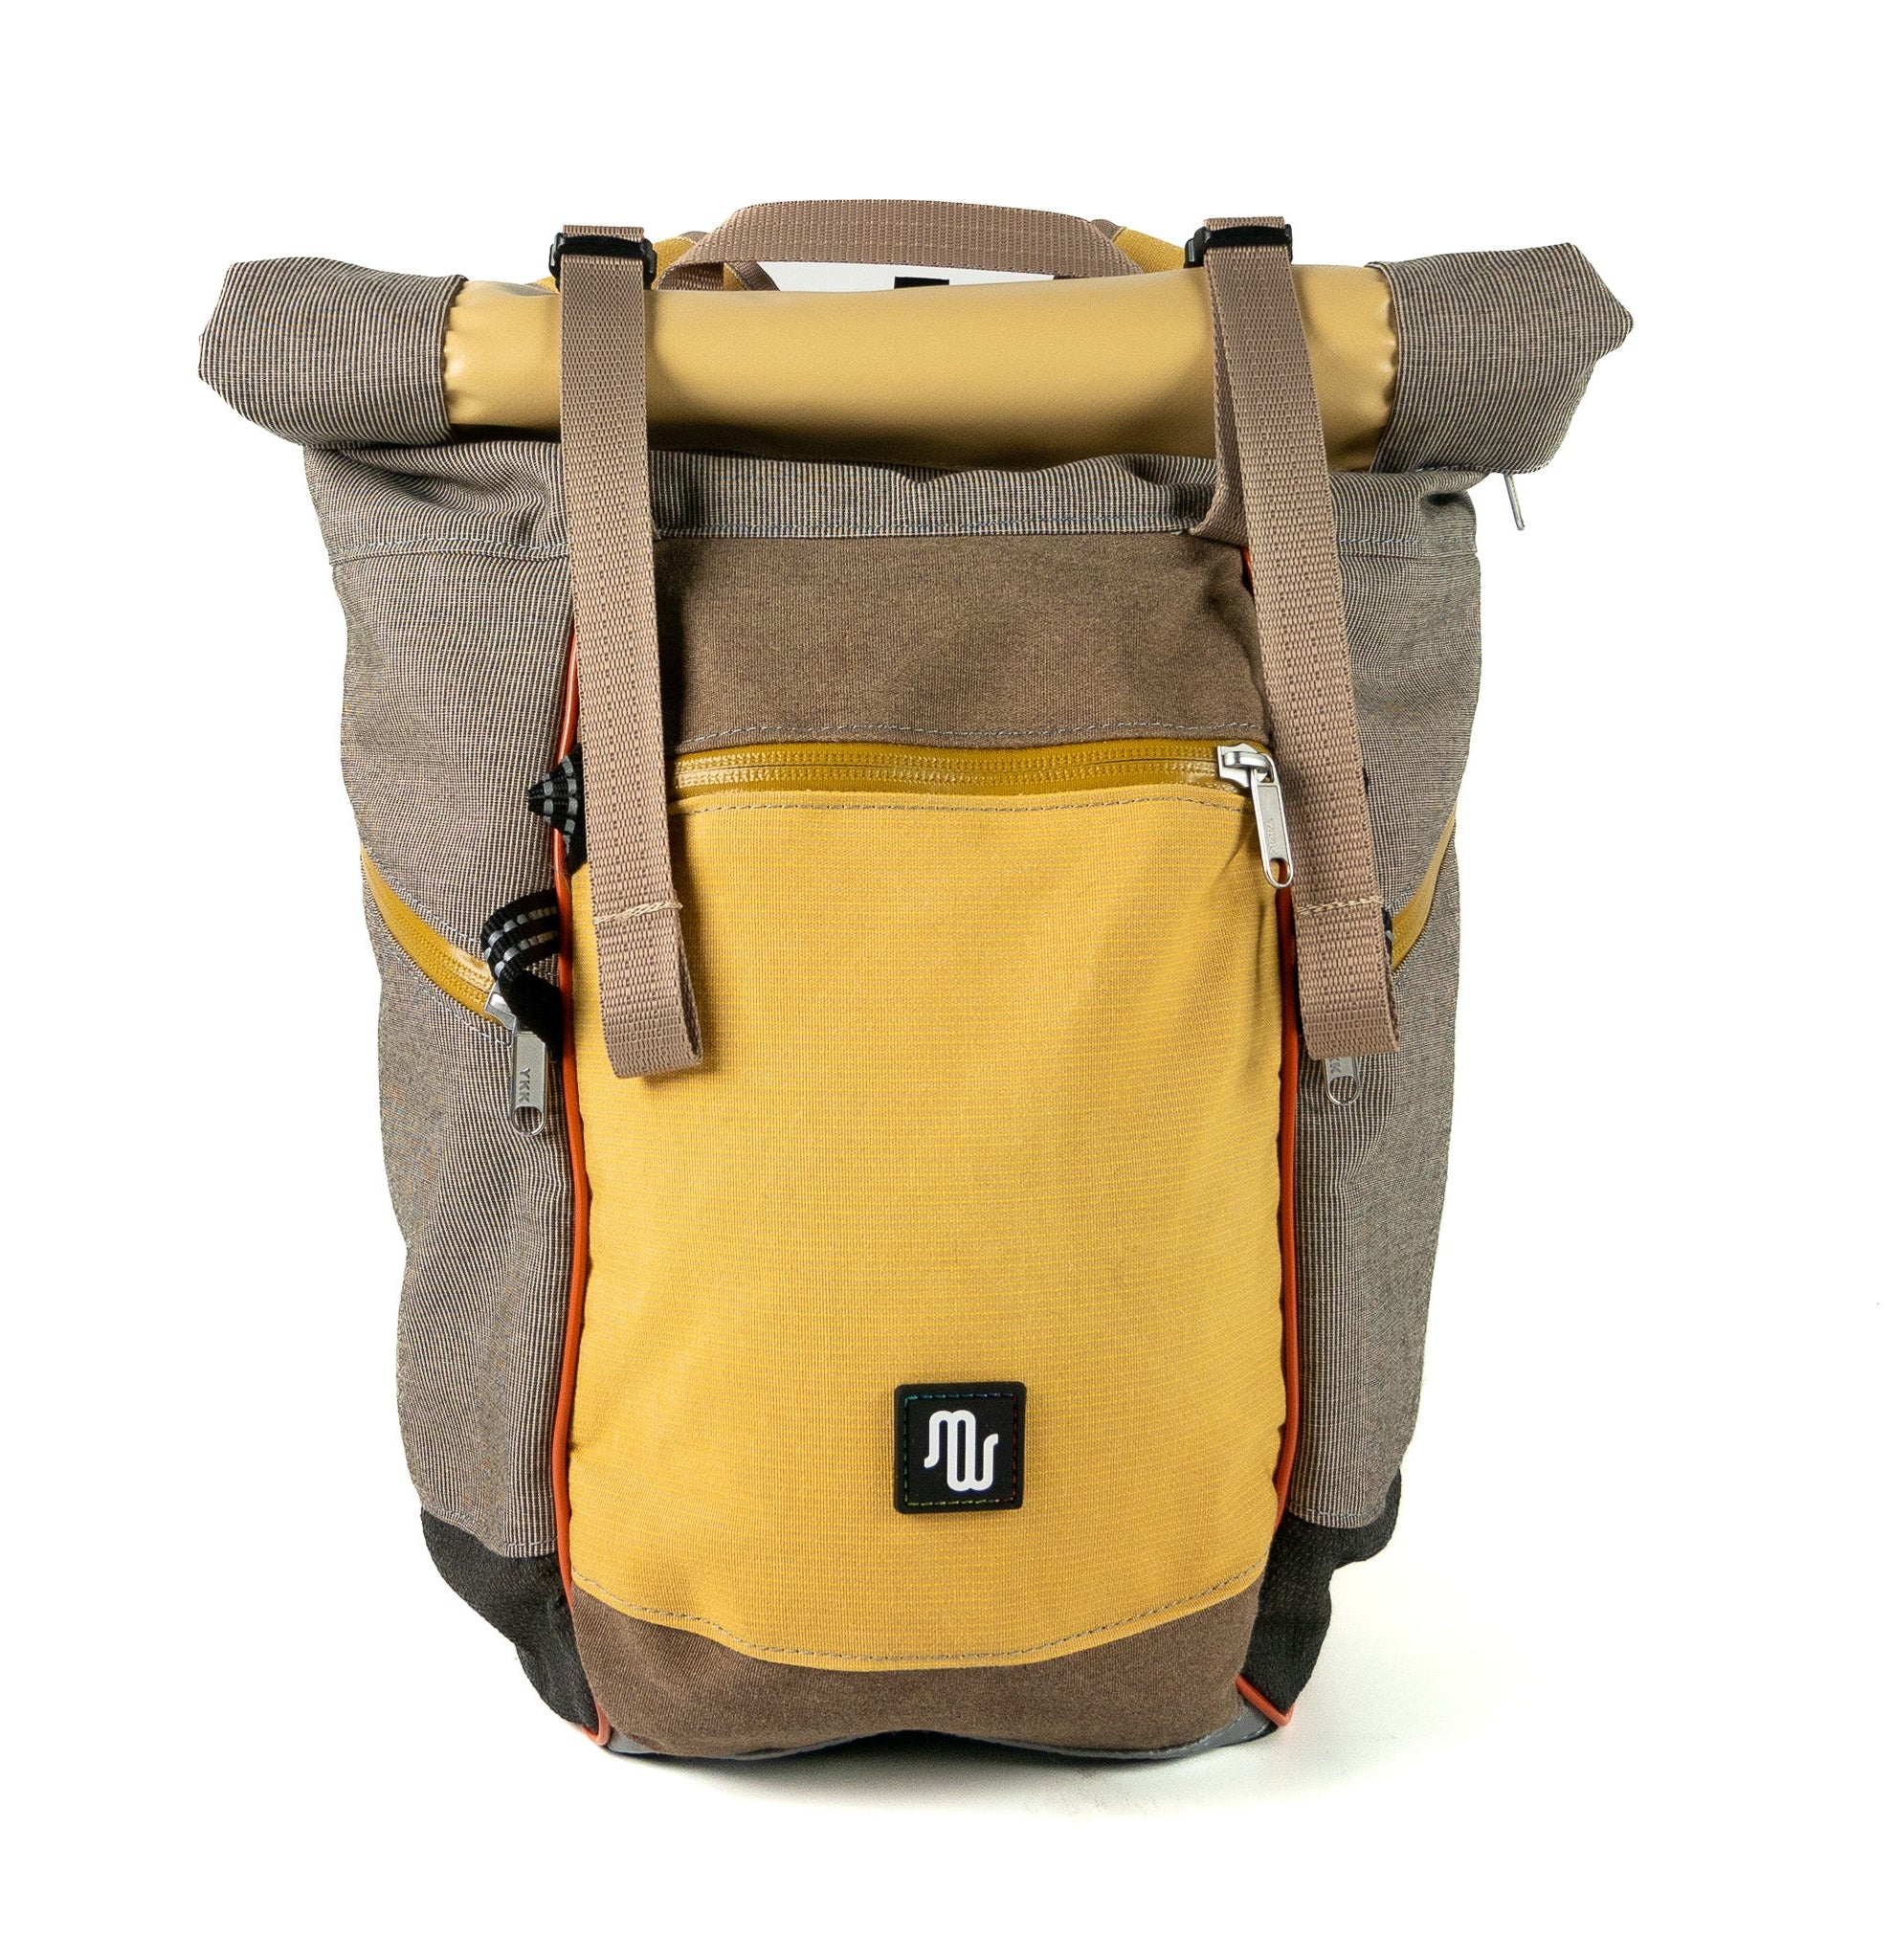 Backpack - BUDDY No. 147 - Backpack - medencebag